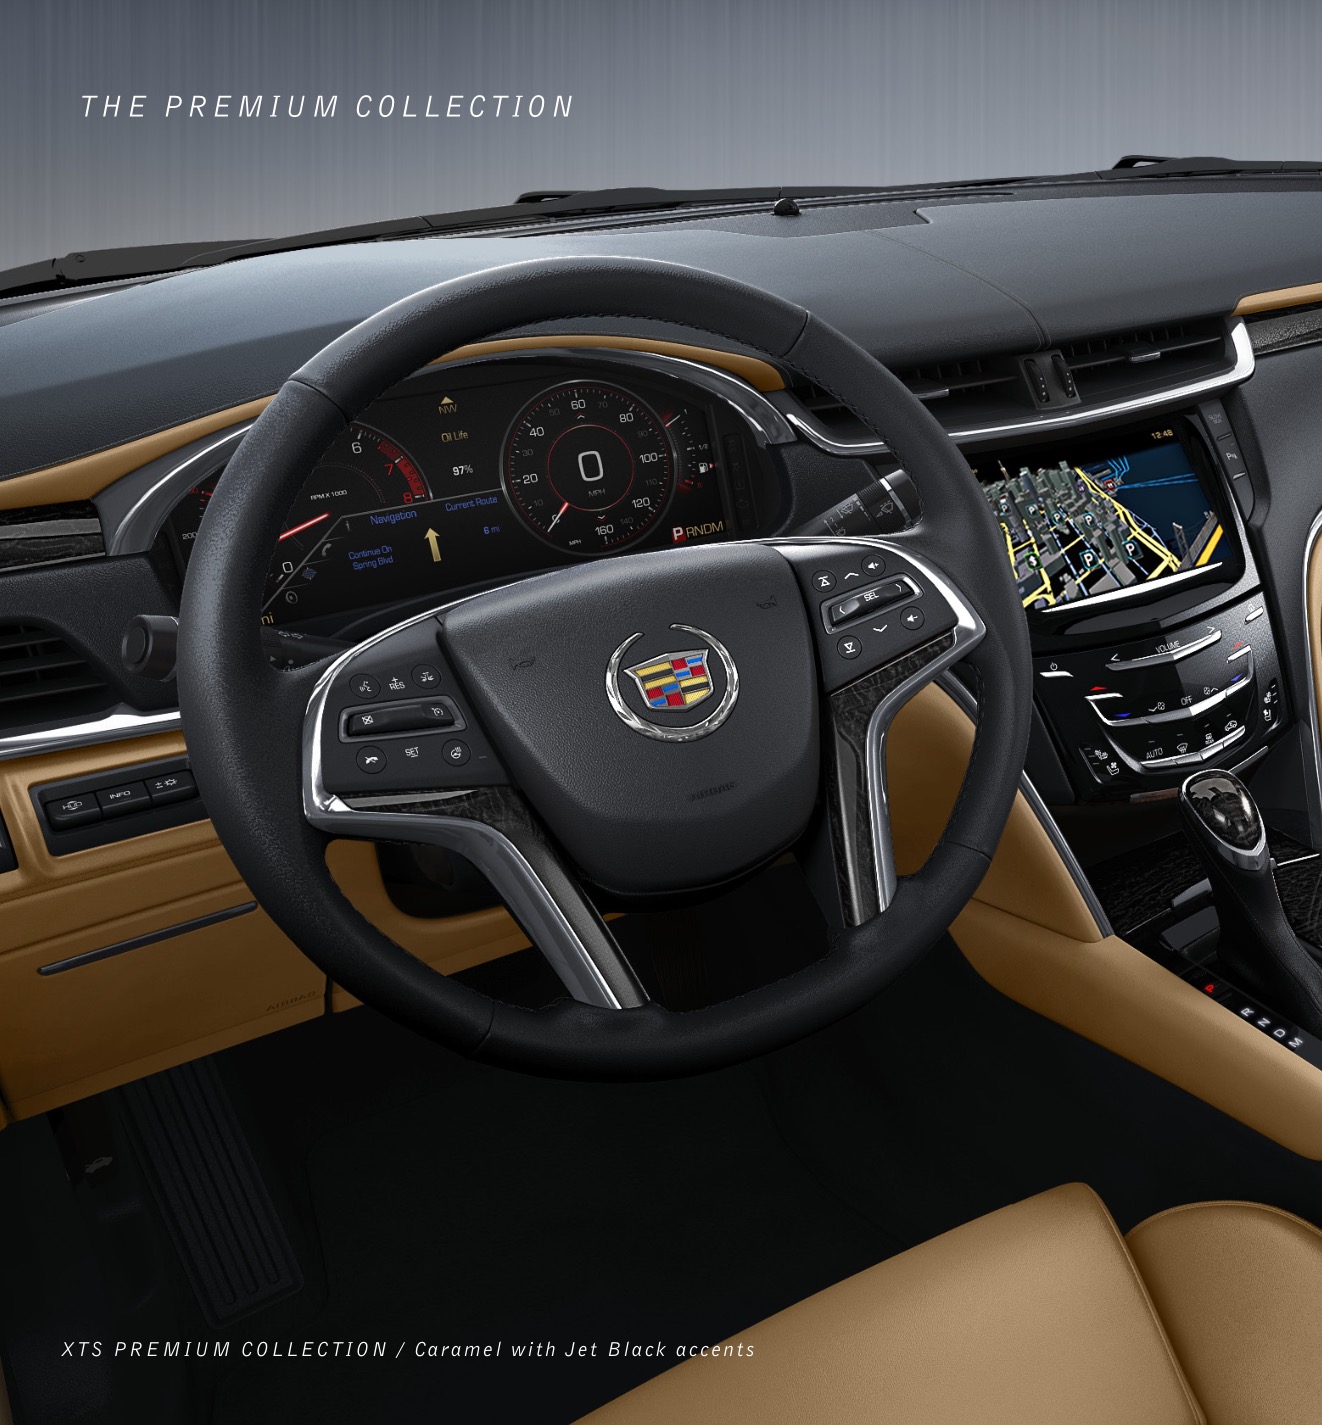 2013 Cadillac XTS Brochure Page 20